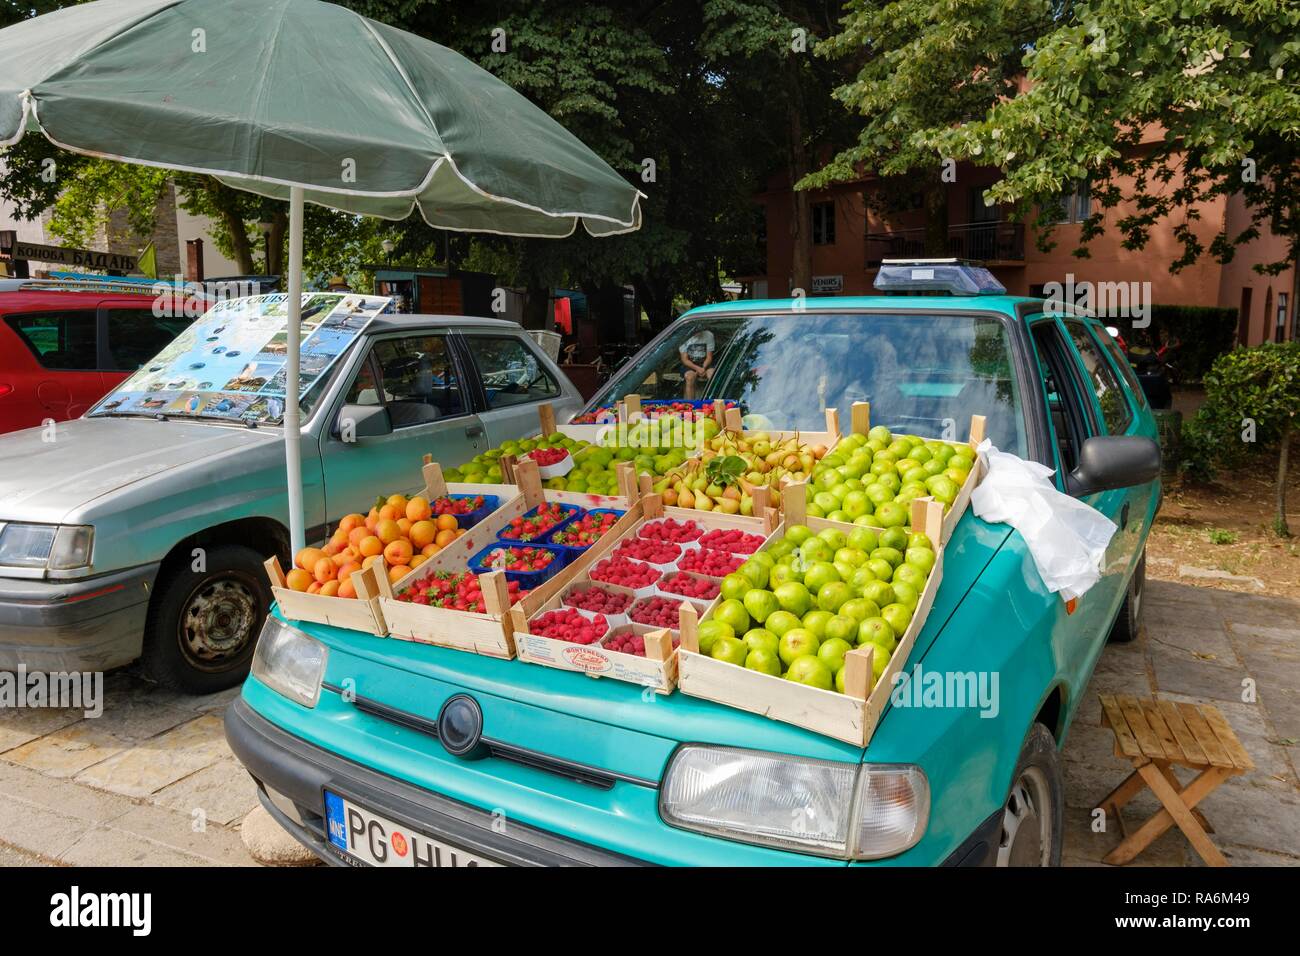 Display of fruit on hood of car, Virpazar, at Lake Skadar, at bar, Montenegro Stock Photo